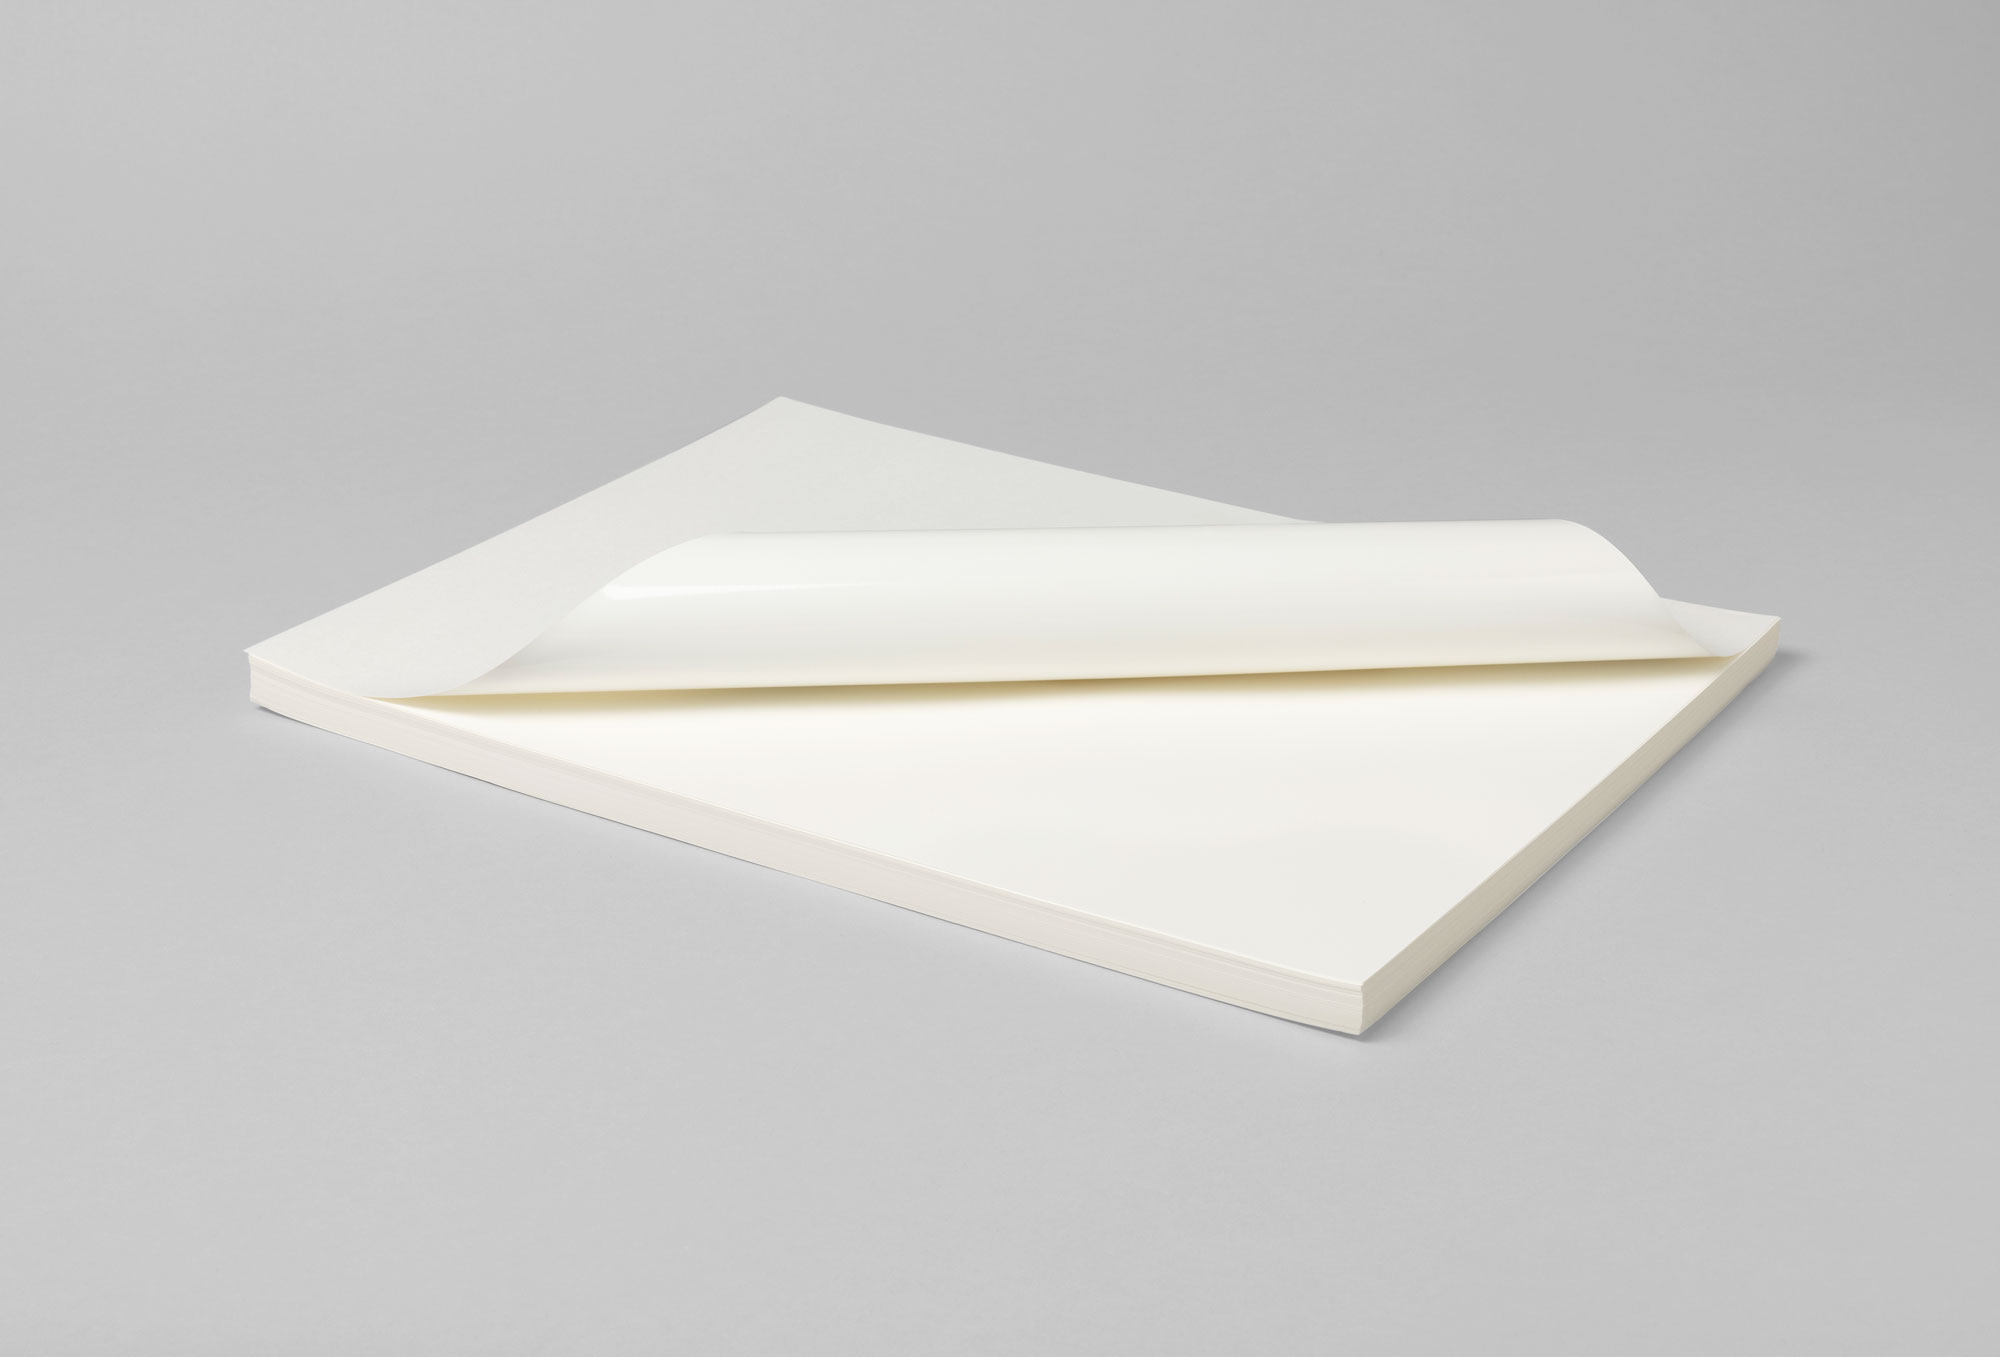 Ceramictoner Vorlackiertes Papier CoverCal ohne Fluss eignet sich für die Produktion von Decals. Es ist bereits vorlackiert und in den Größen DIN A4, DIN A3 oder DIN A3 Übergröße erhältlich.